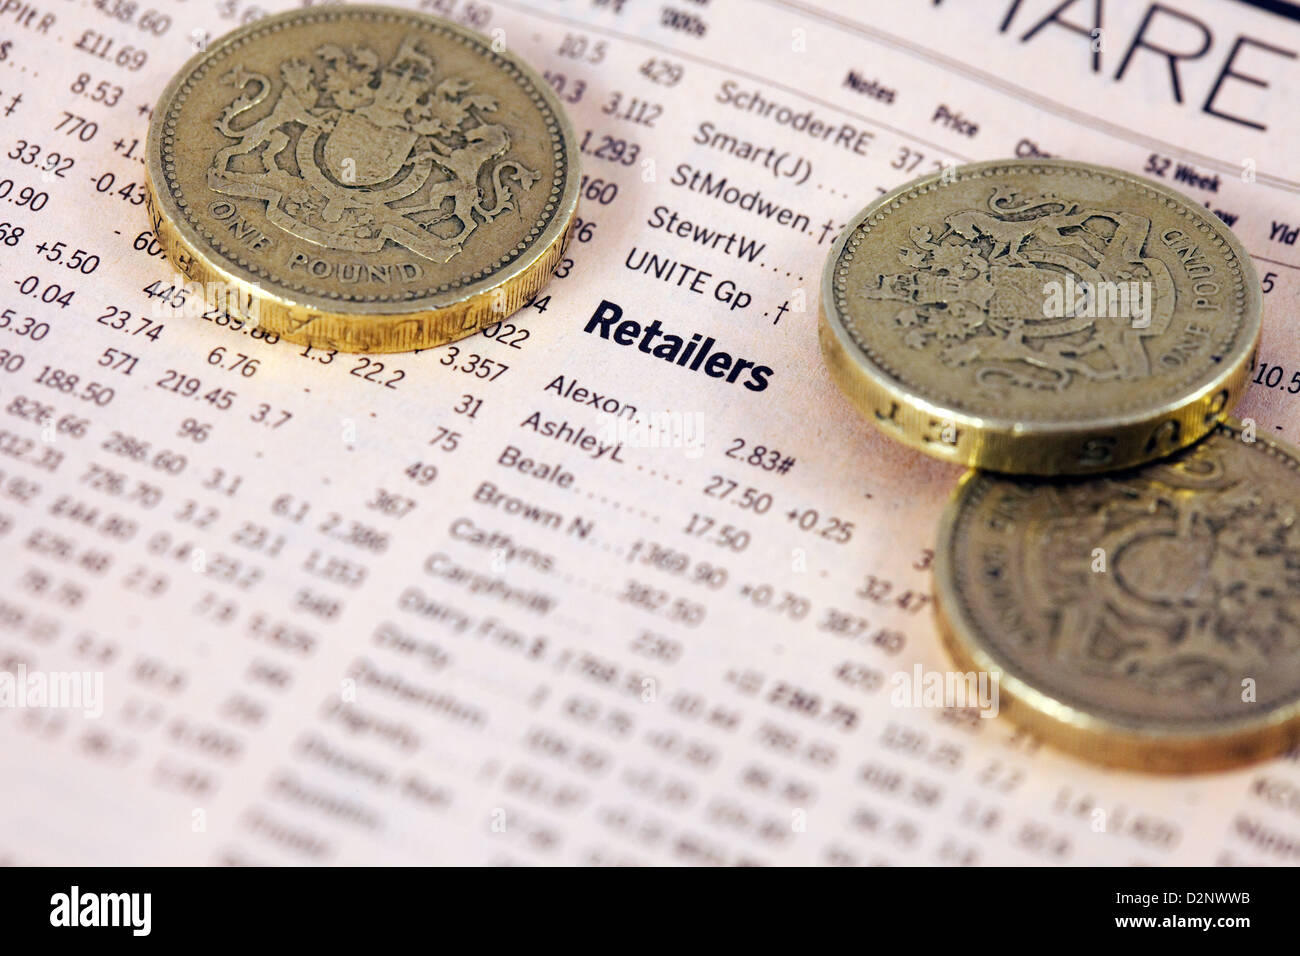 Händler-Aktien und Anteile in der Financial Times Zeitung mit Pfund-Münzen - Konzept des Wertes der Einzelhandel Aktien, UK Stockfoto